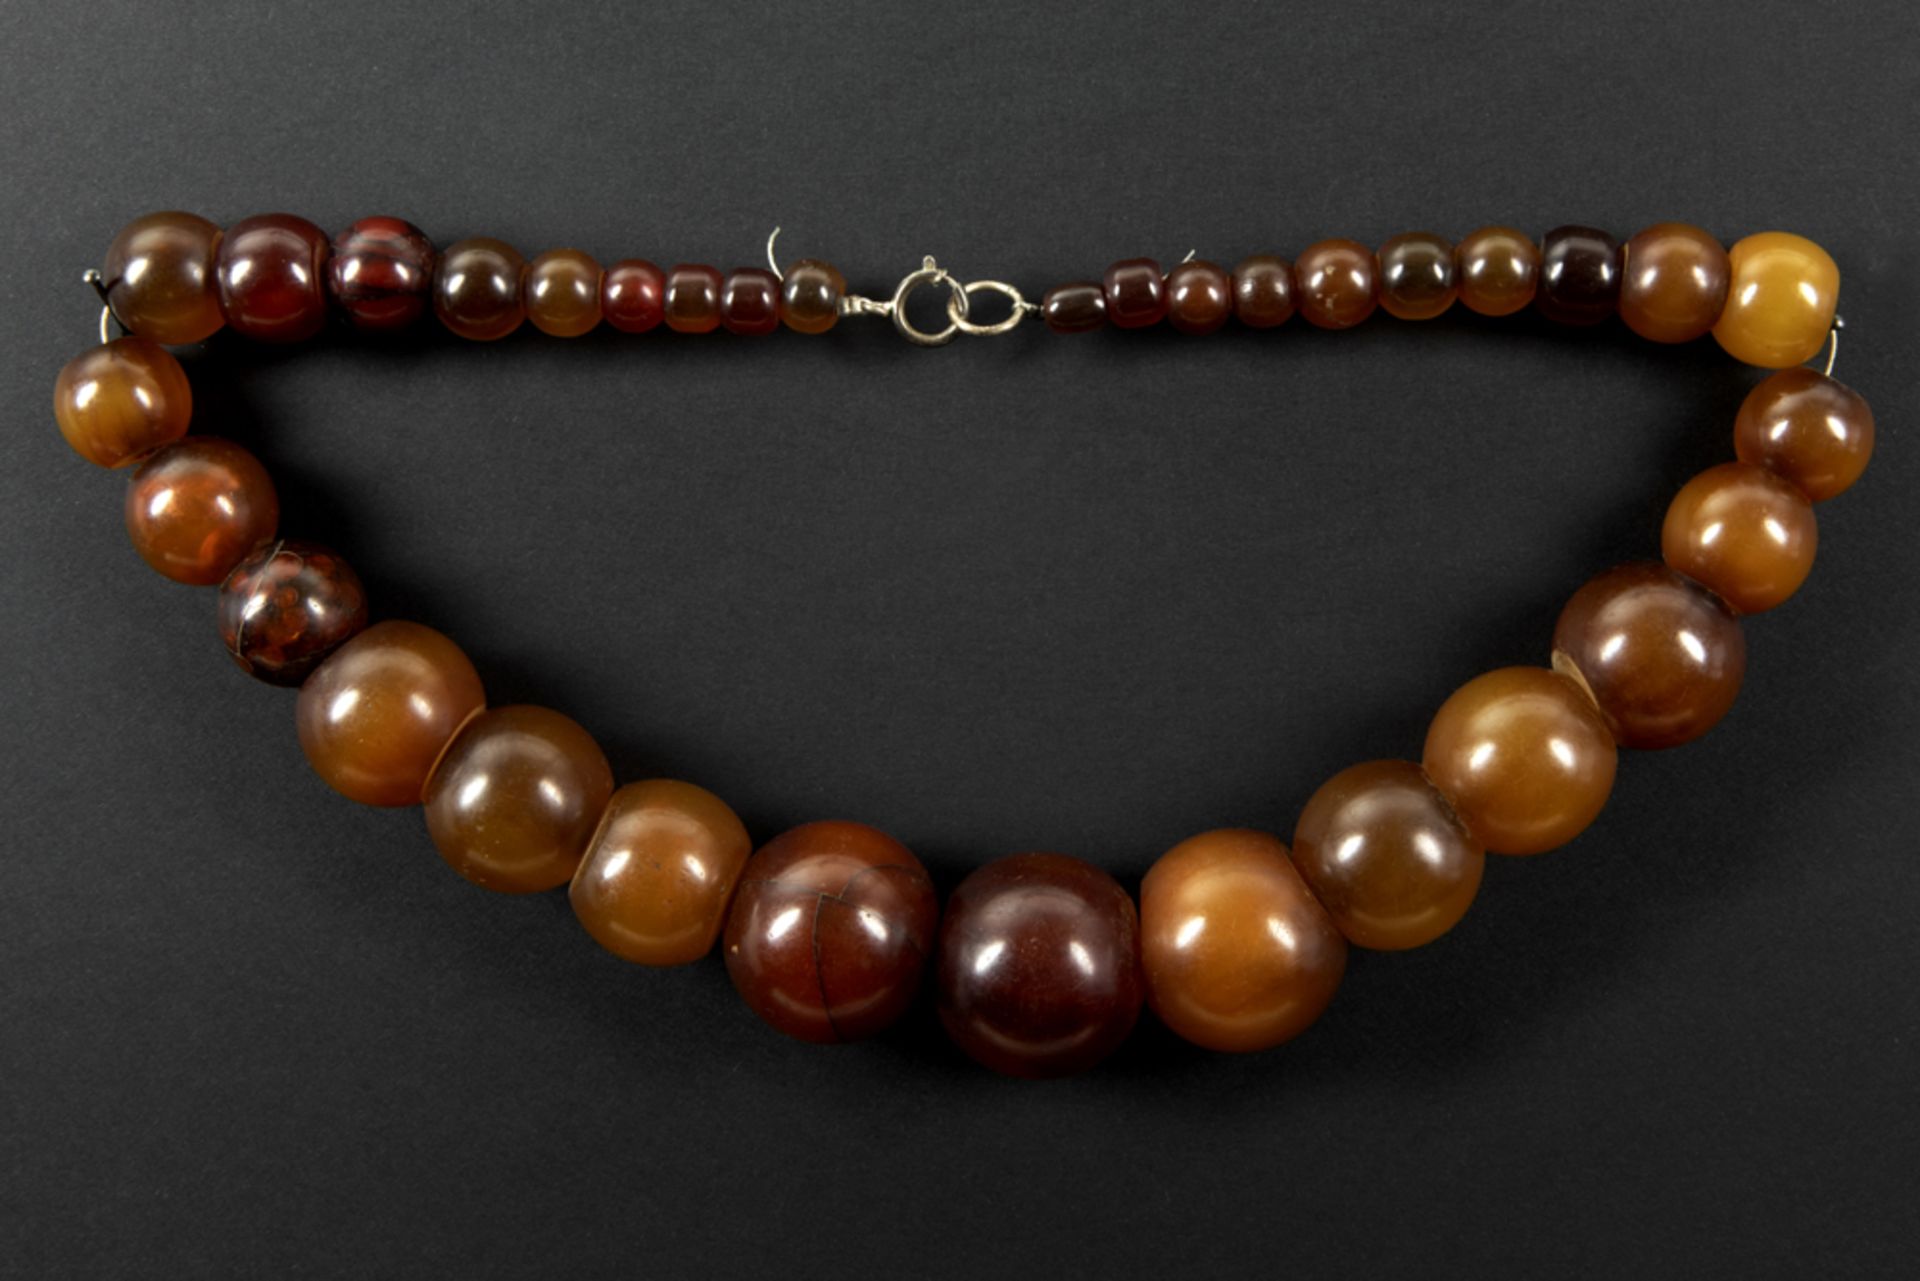 necklace with amber beads || Collier met kralen van amber - lengte : ca 50 cm - gewicht : 144 gram